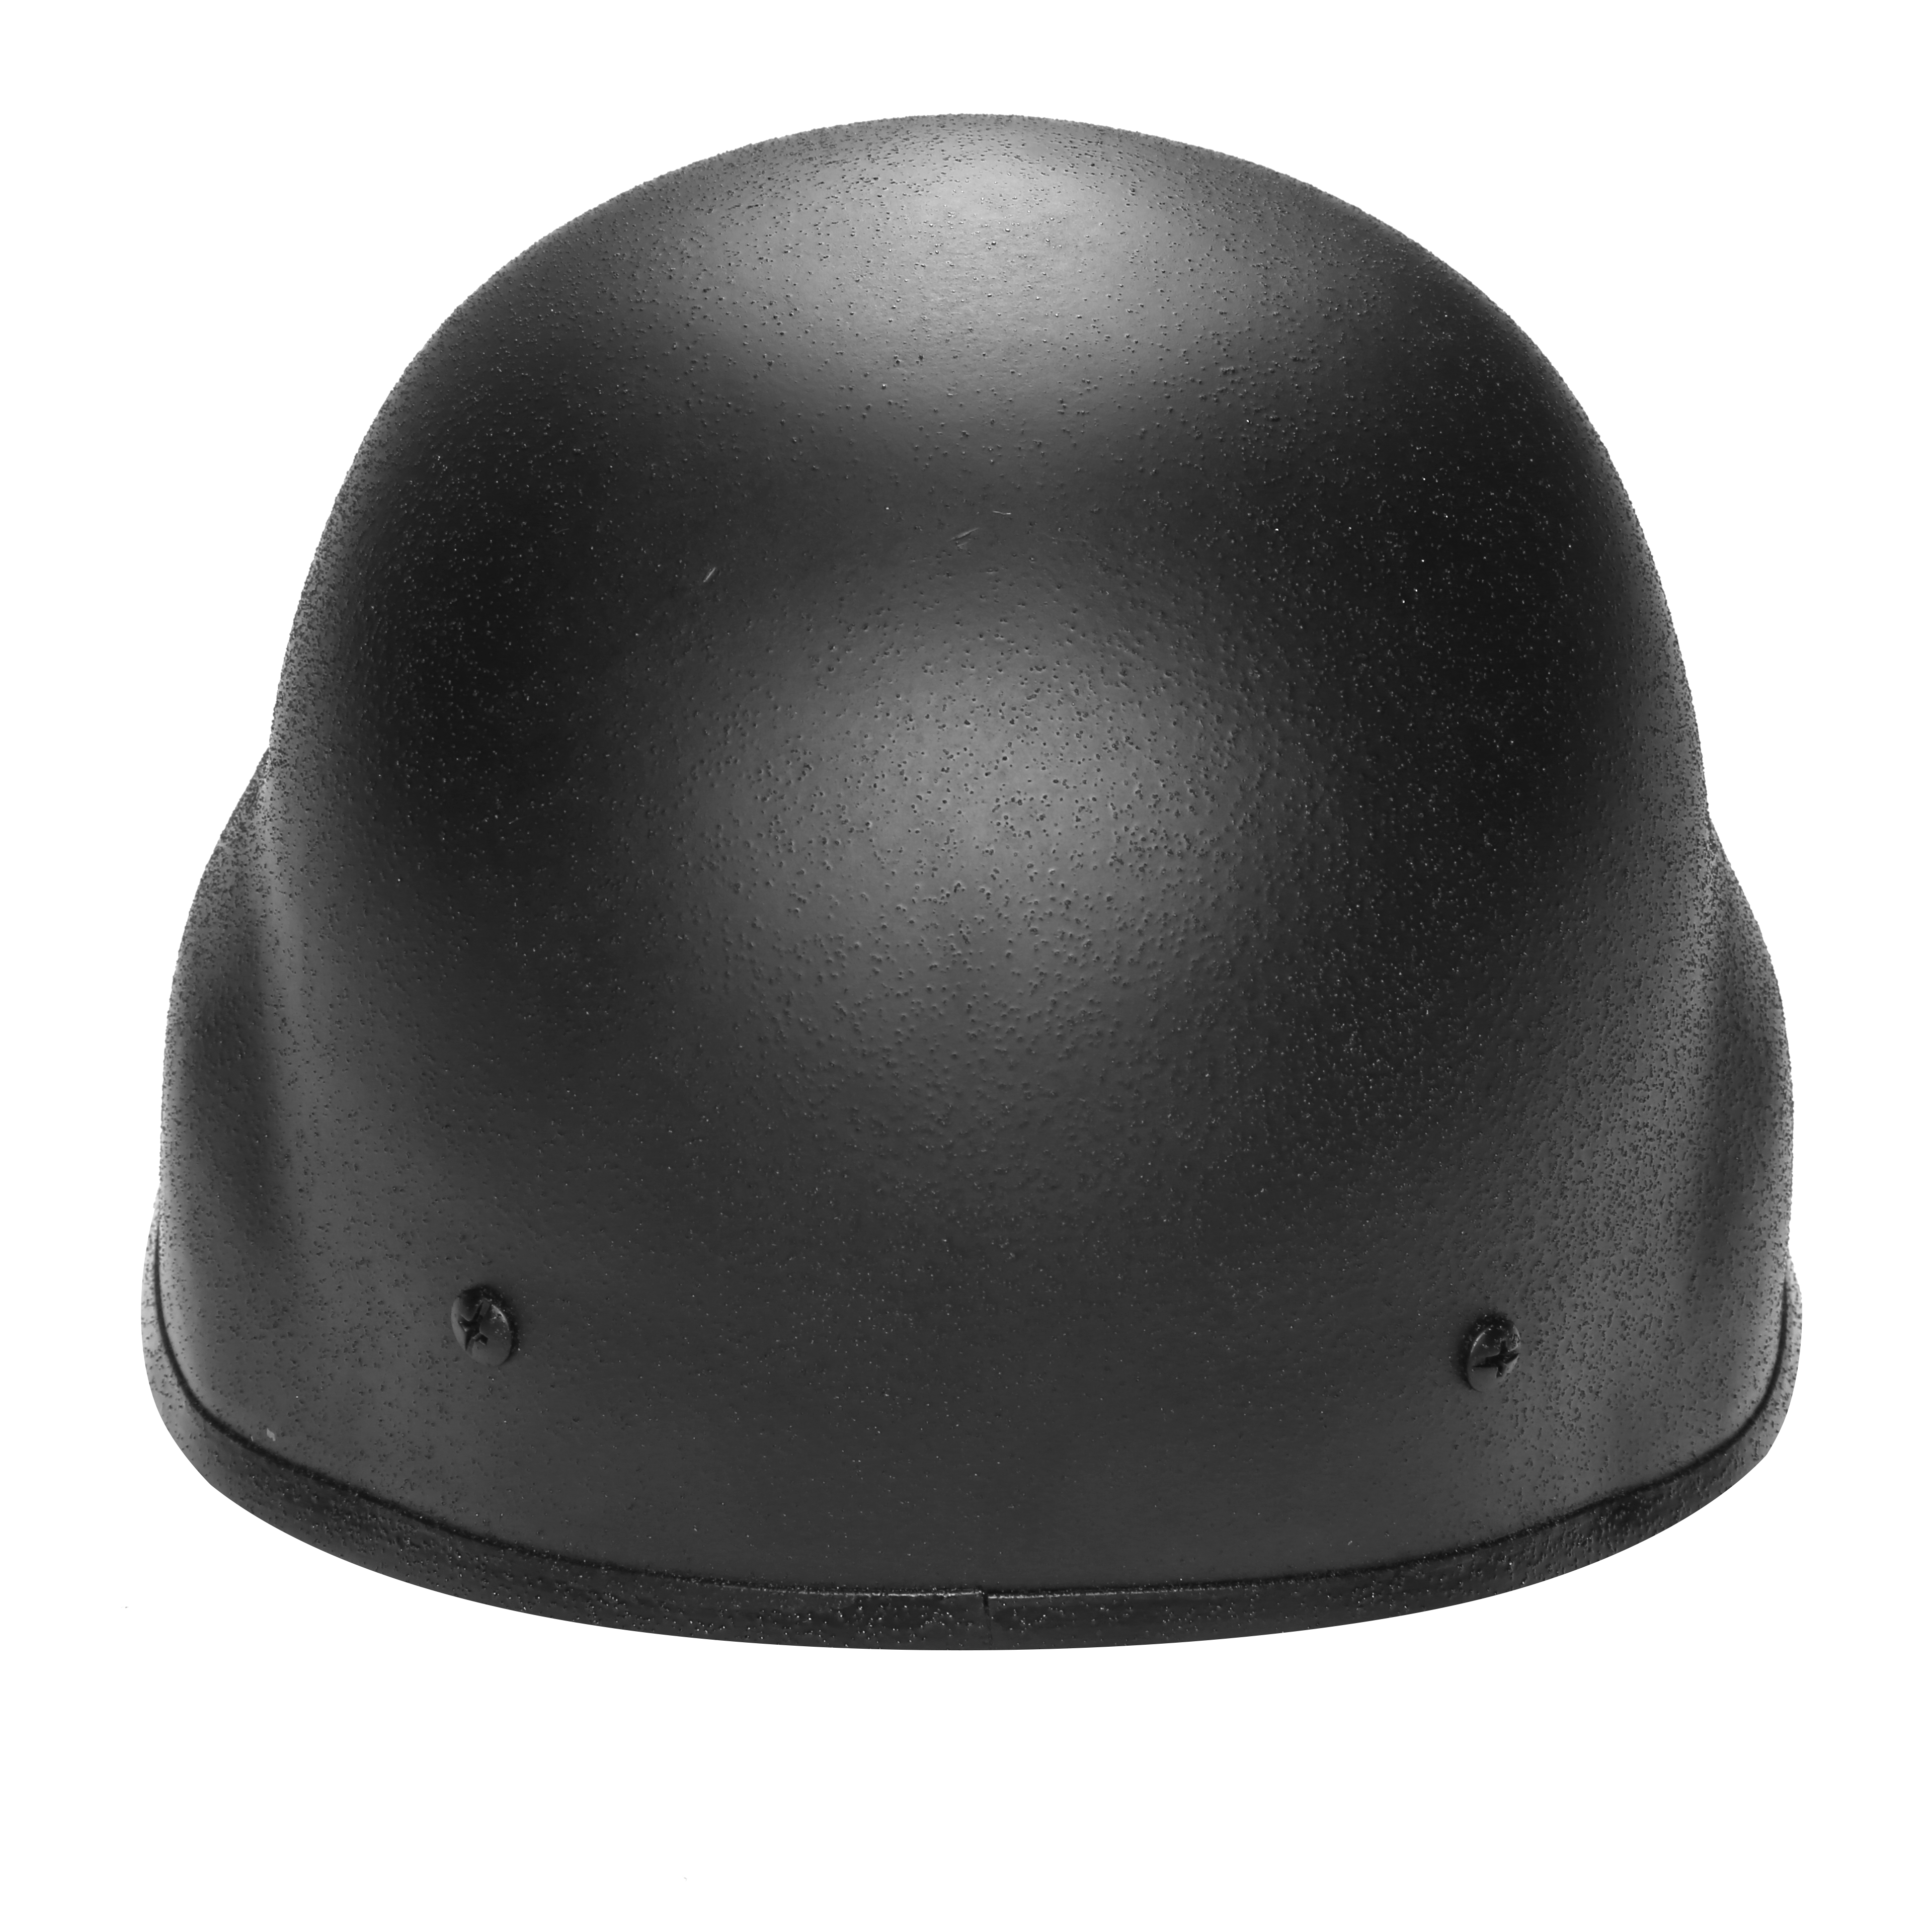 NIJ Level IIIA III IV PE Material Aramid Bulletproof Helmet